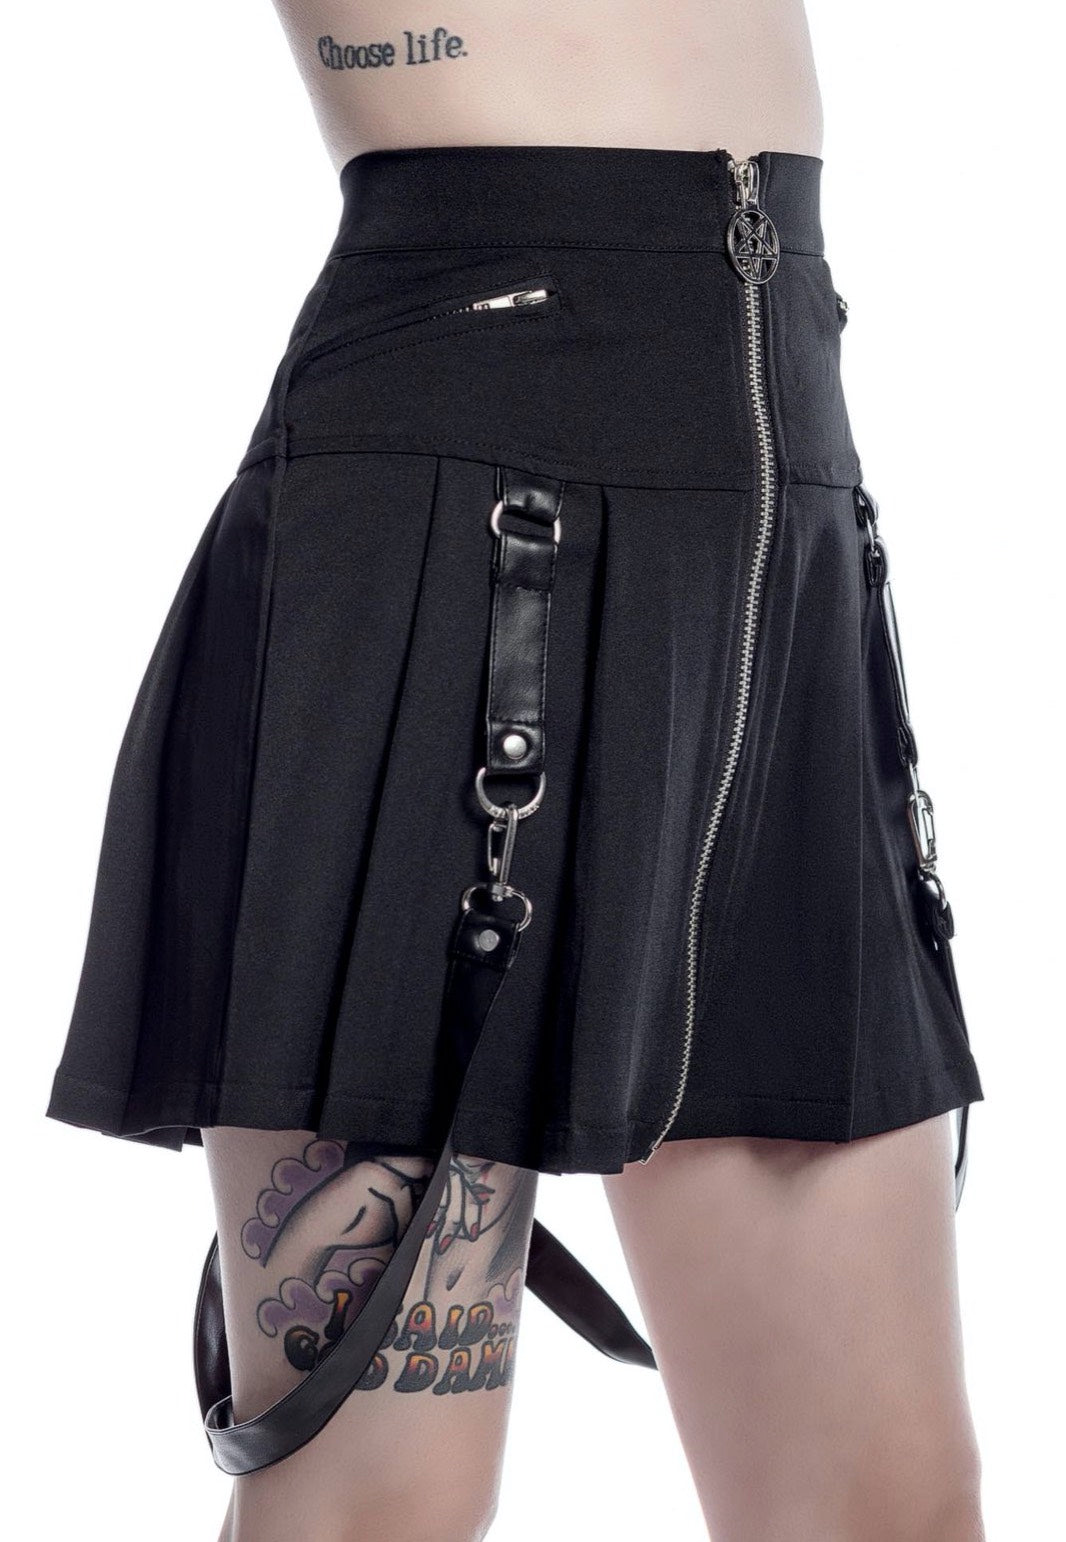 Killstar - Blaire B*tch Black - Skirt